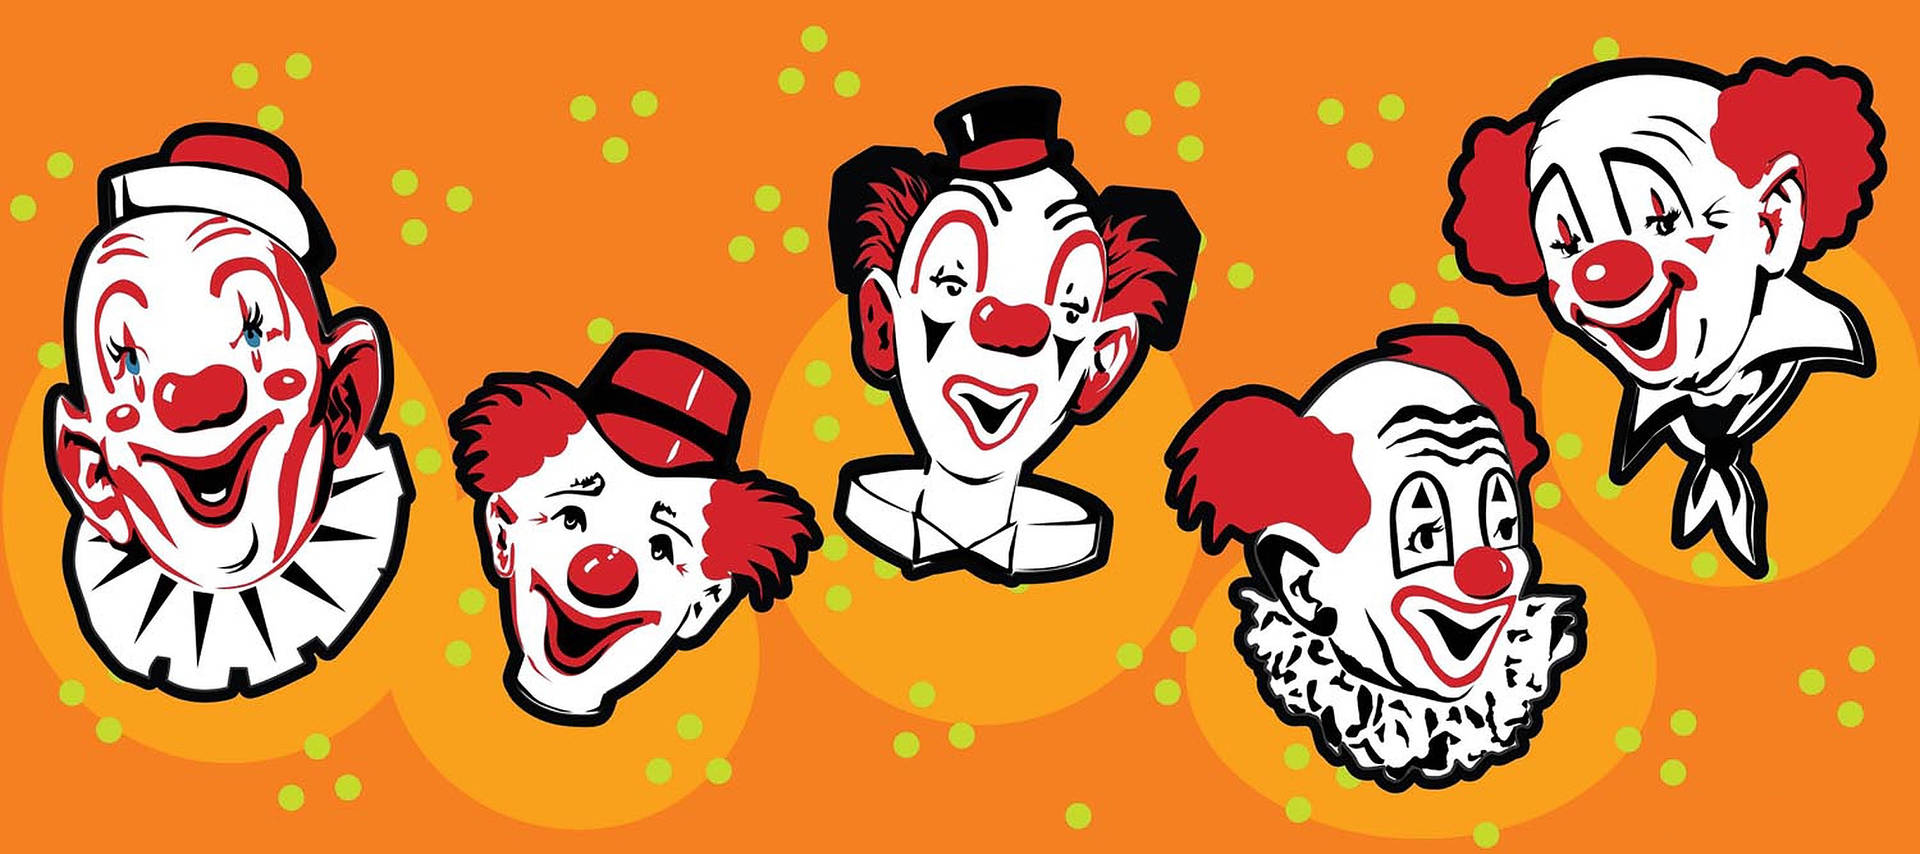 Clowns Vector Art Background